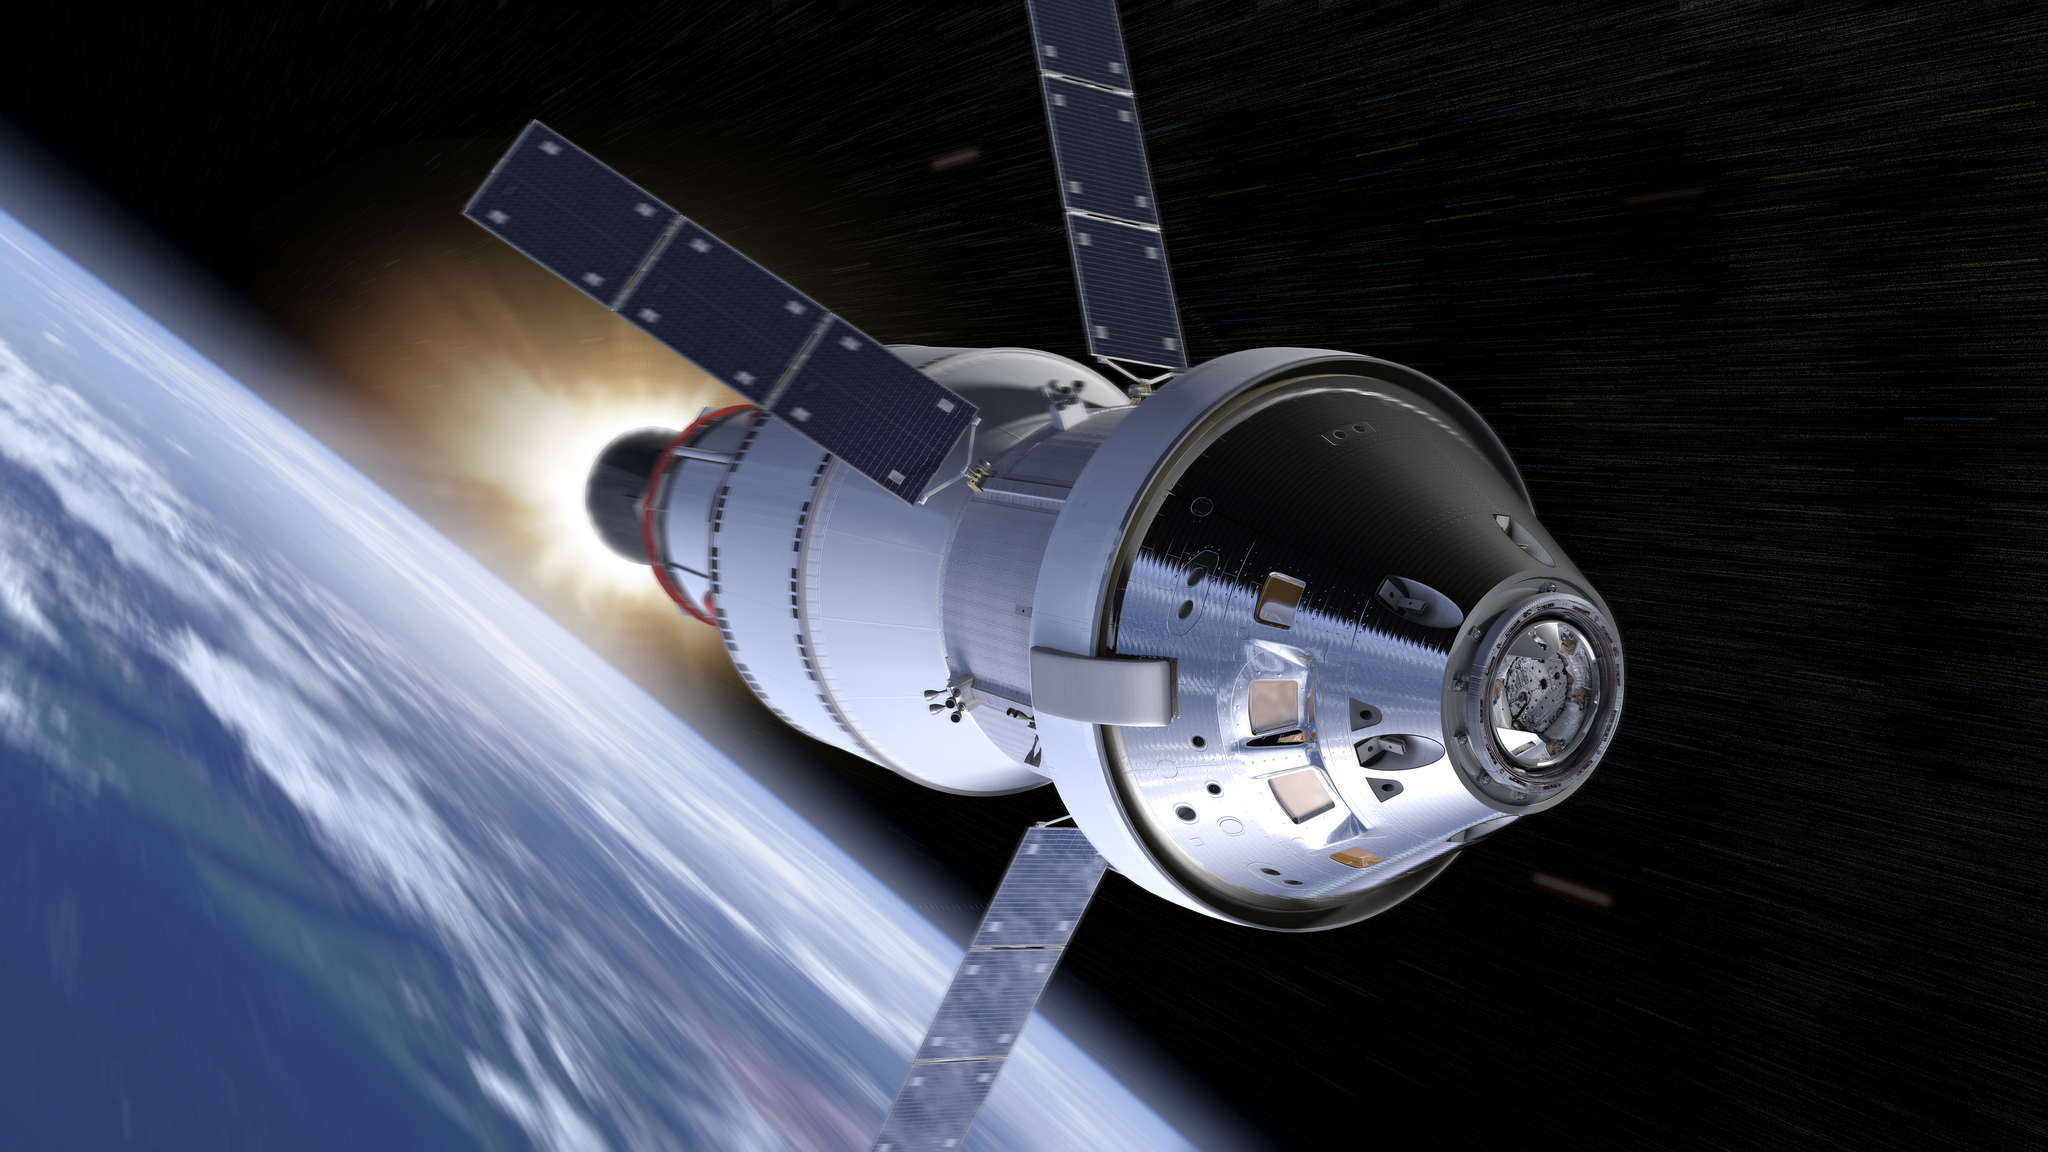 NASA still aiming for 2024 moon landing despite SLS megarocket delays Space